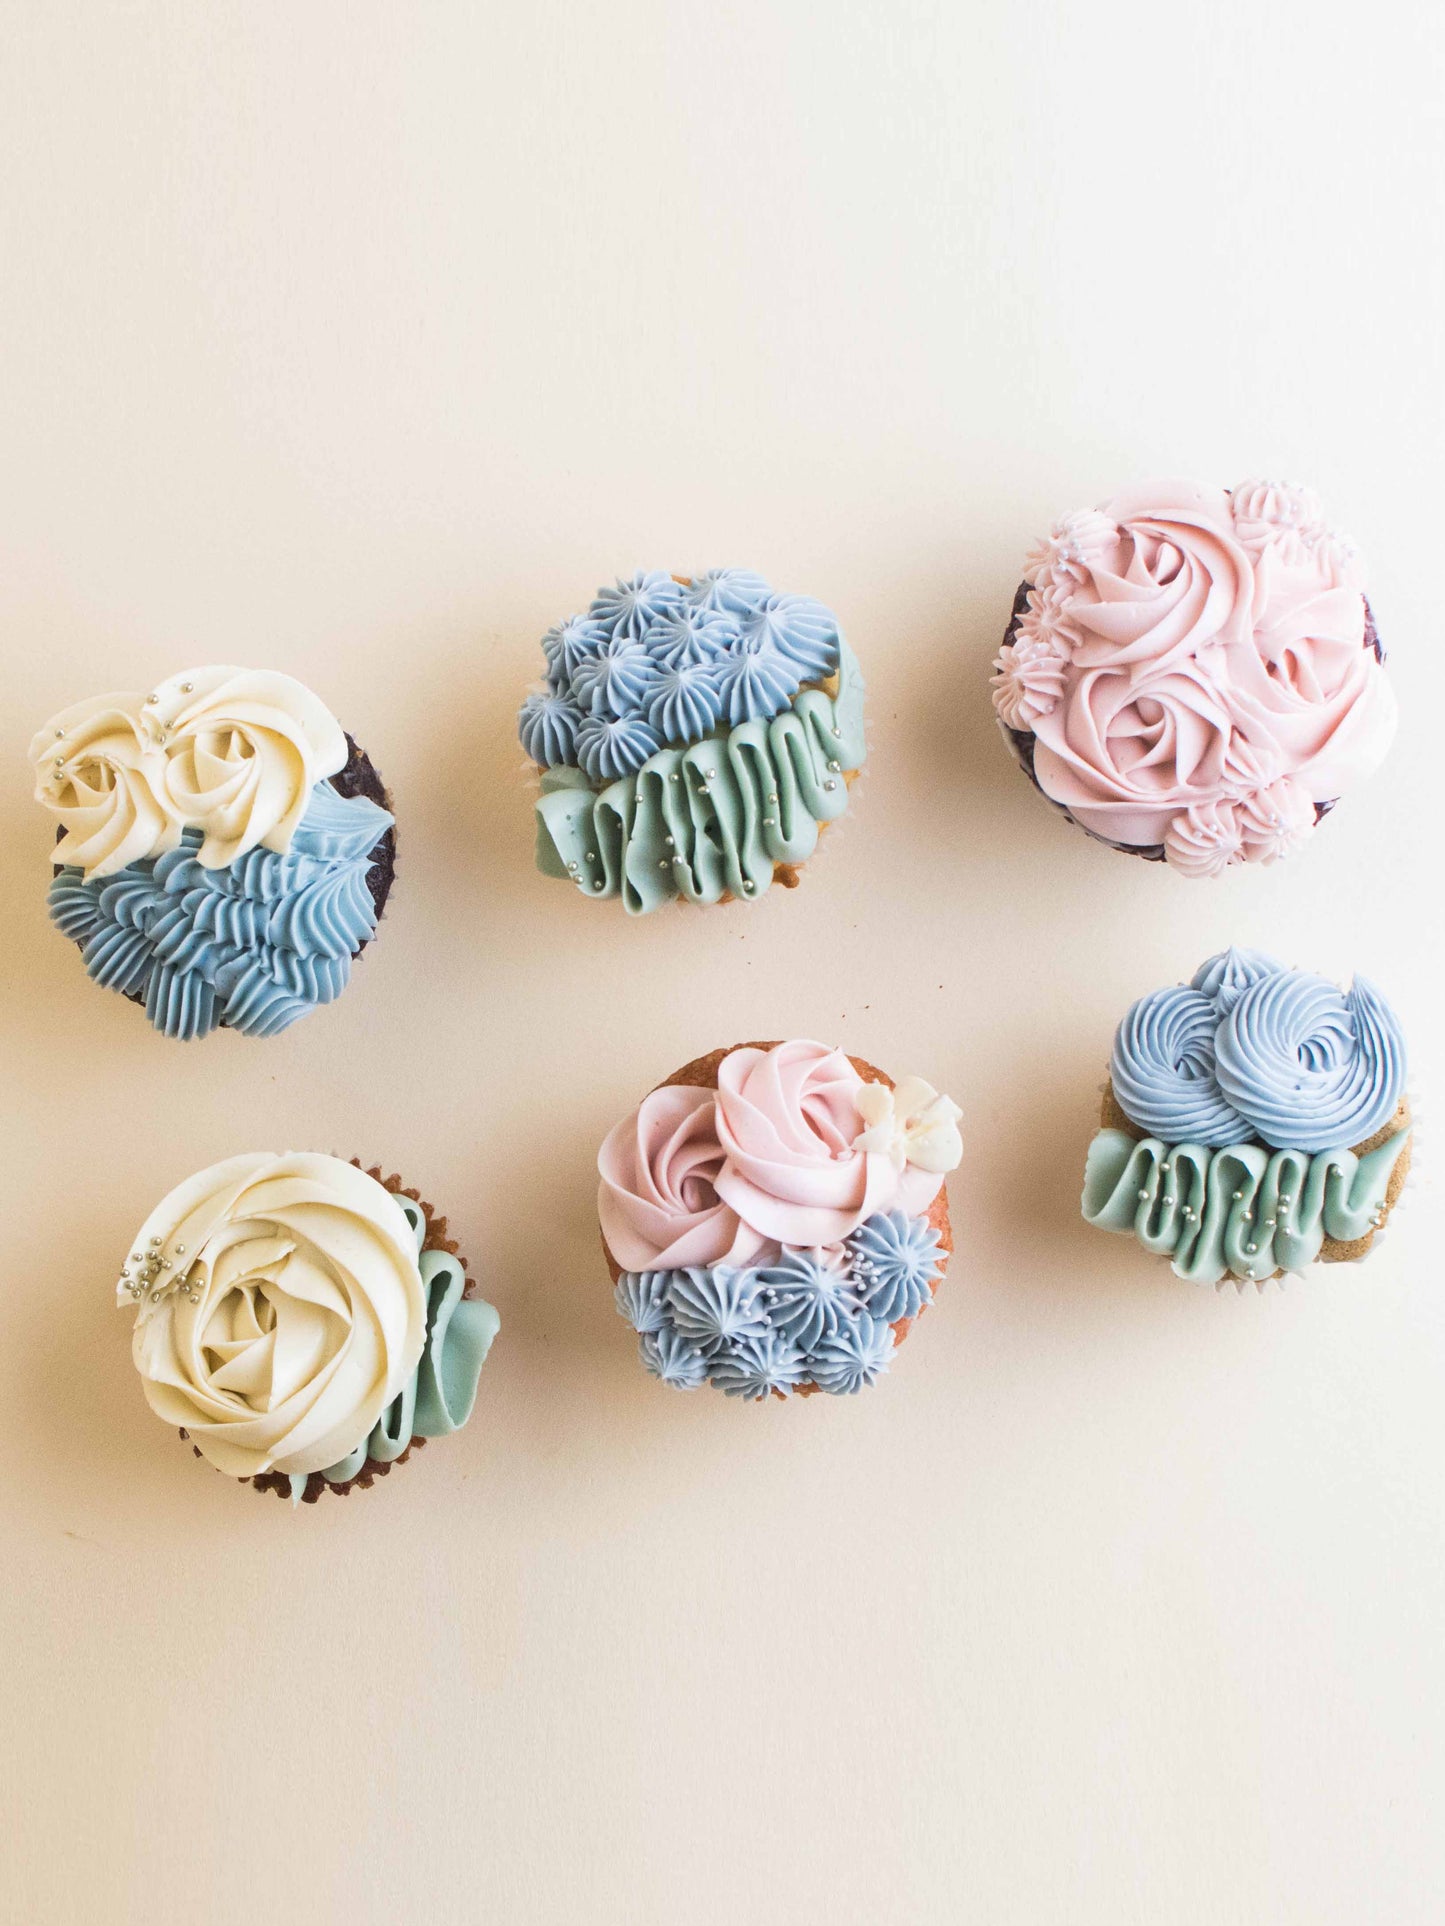 Decorated Cupcakes (Pastel Tones)